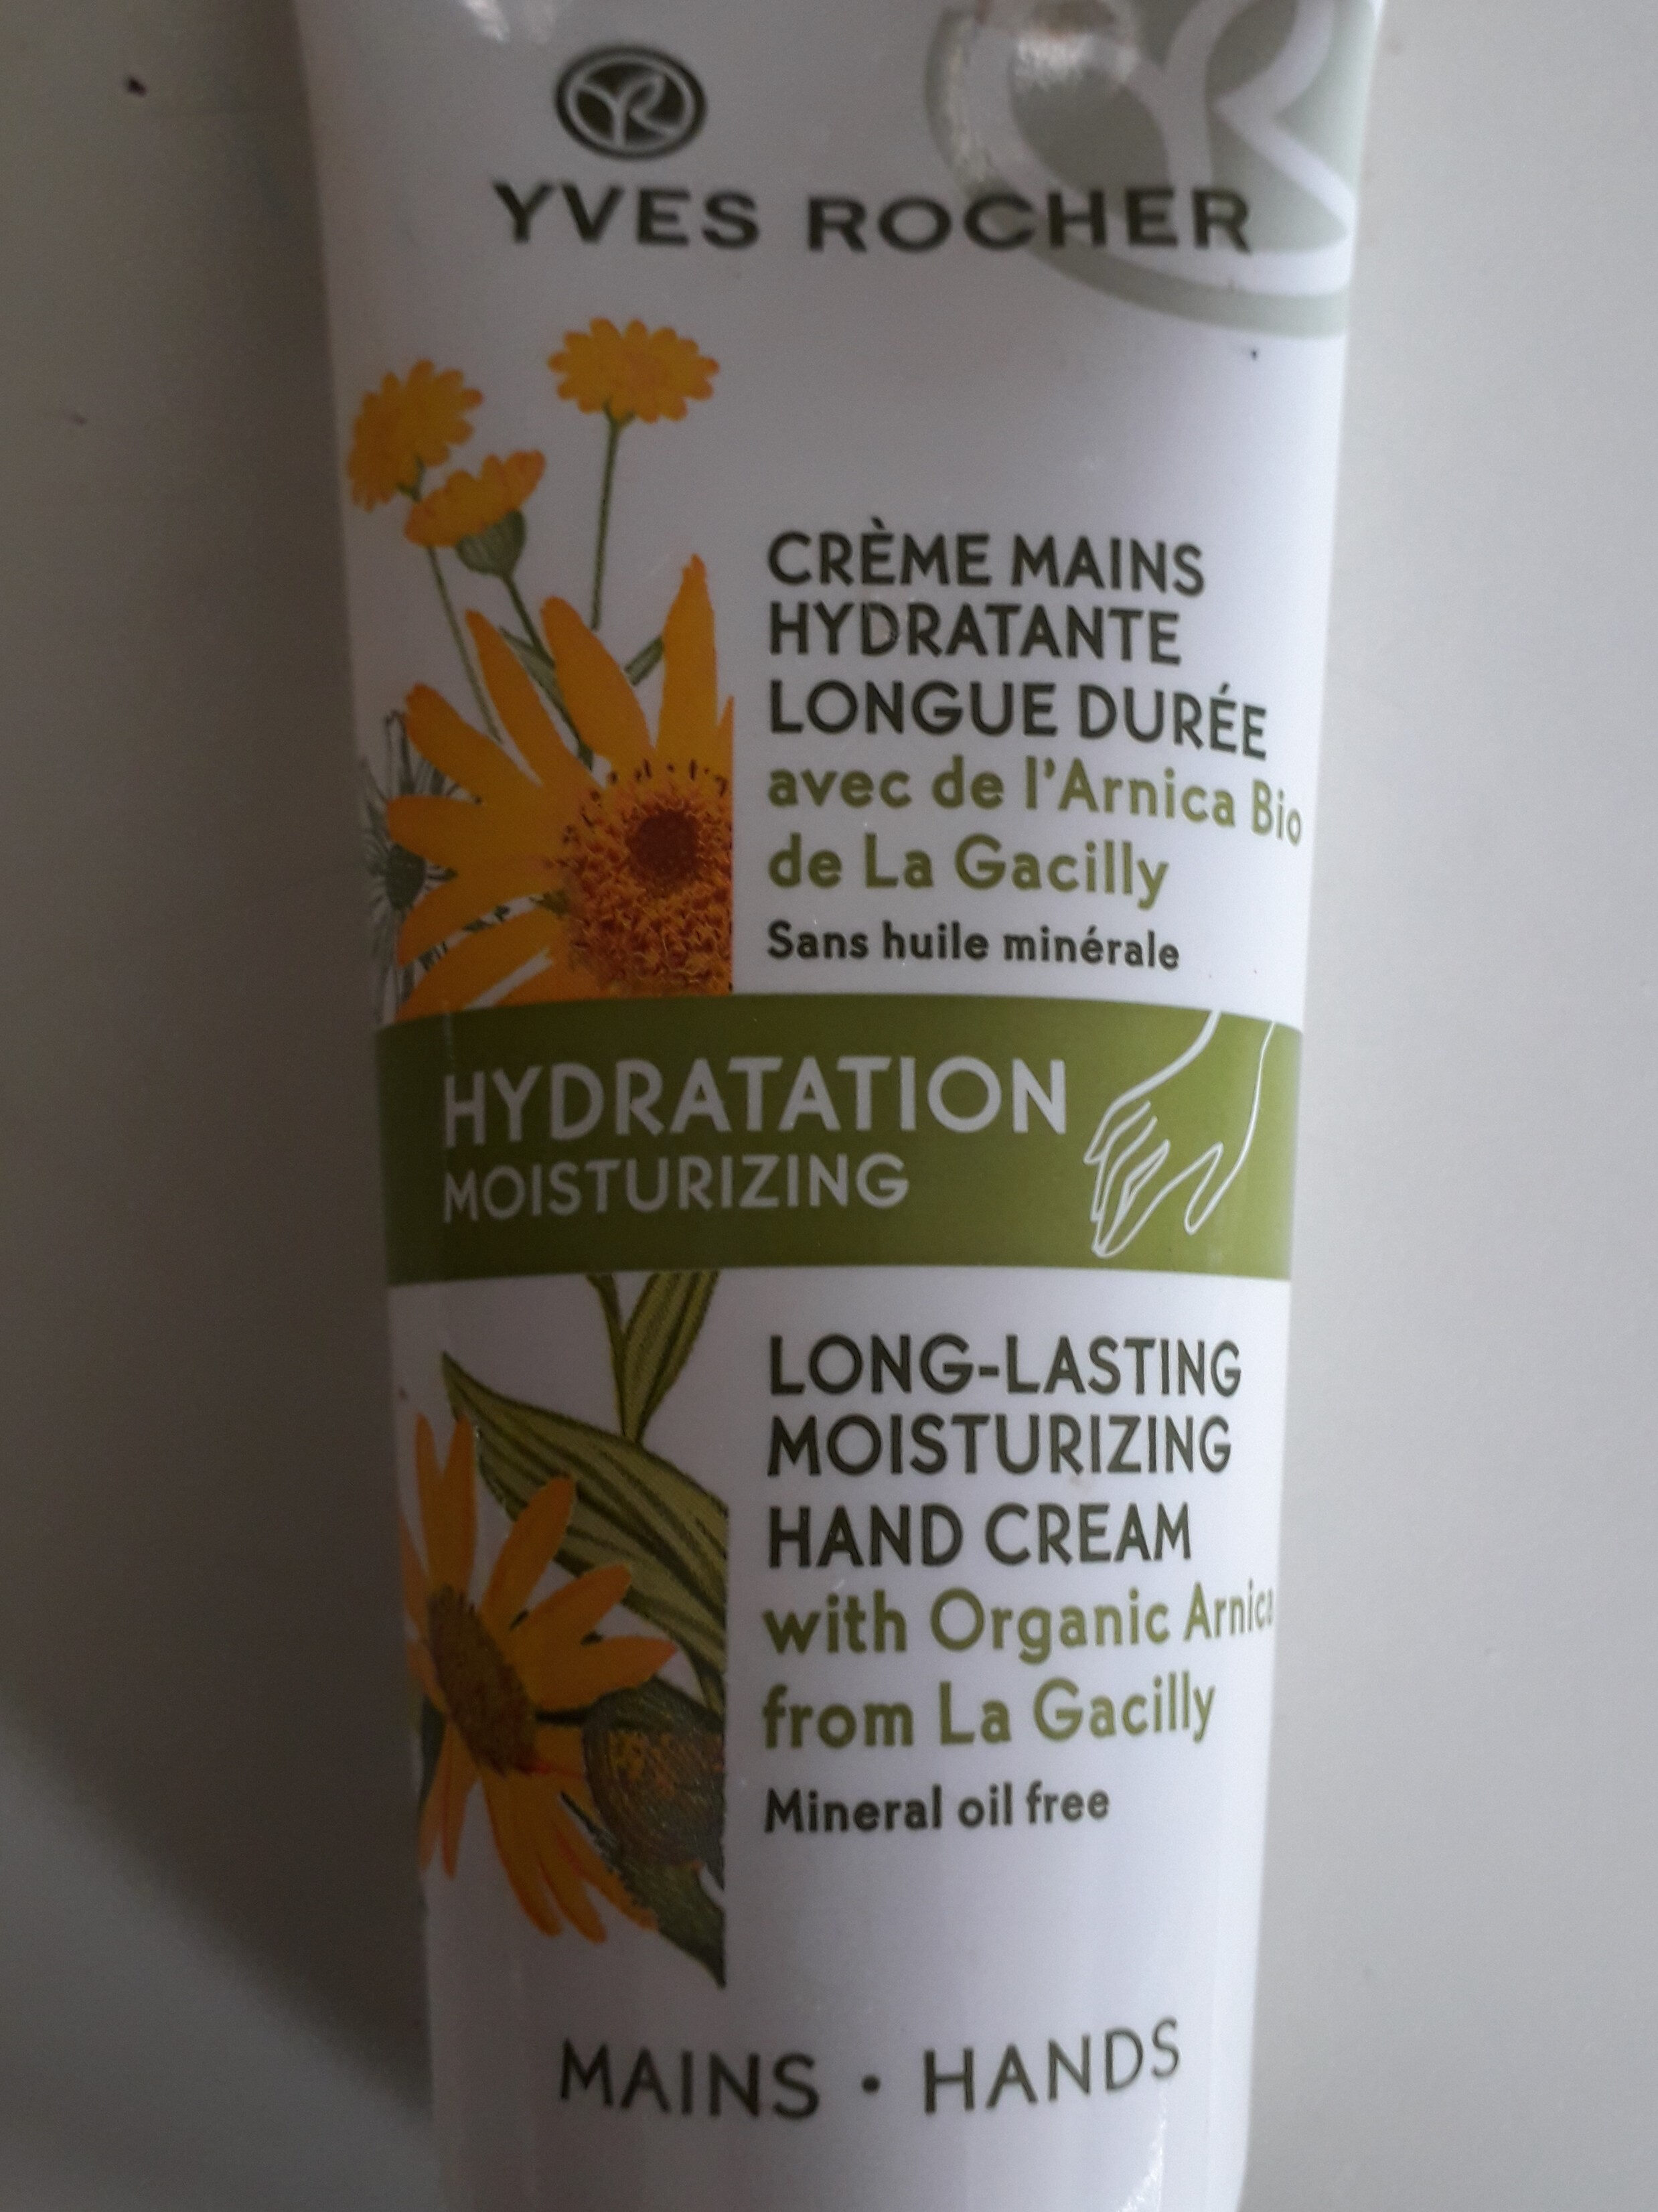 Crème mains hydratante longue durée - Product - en